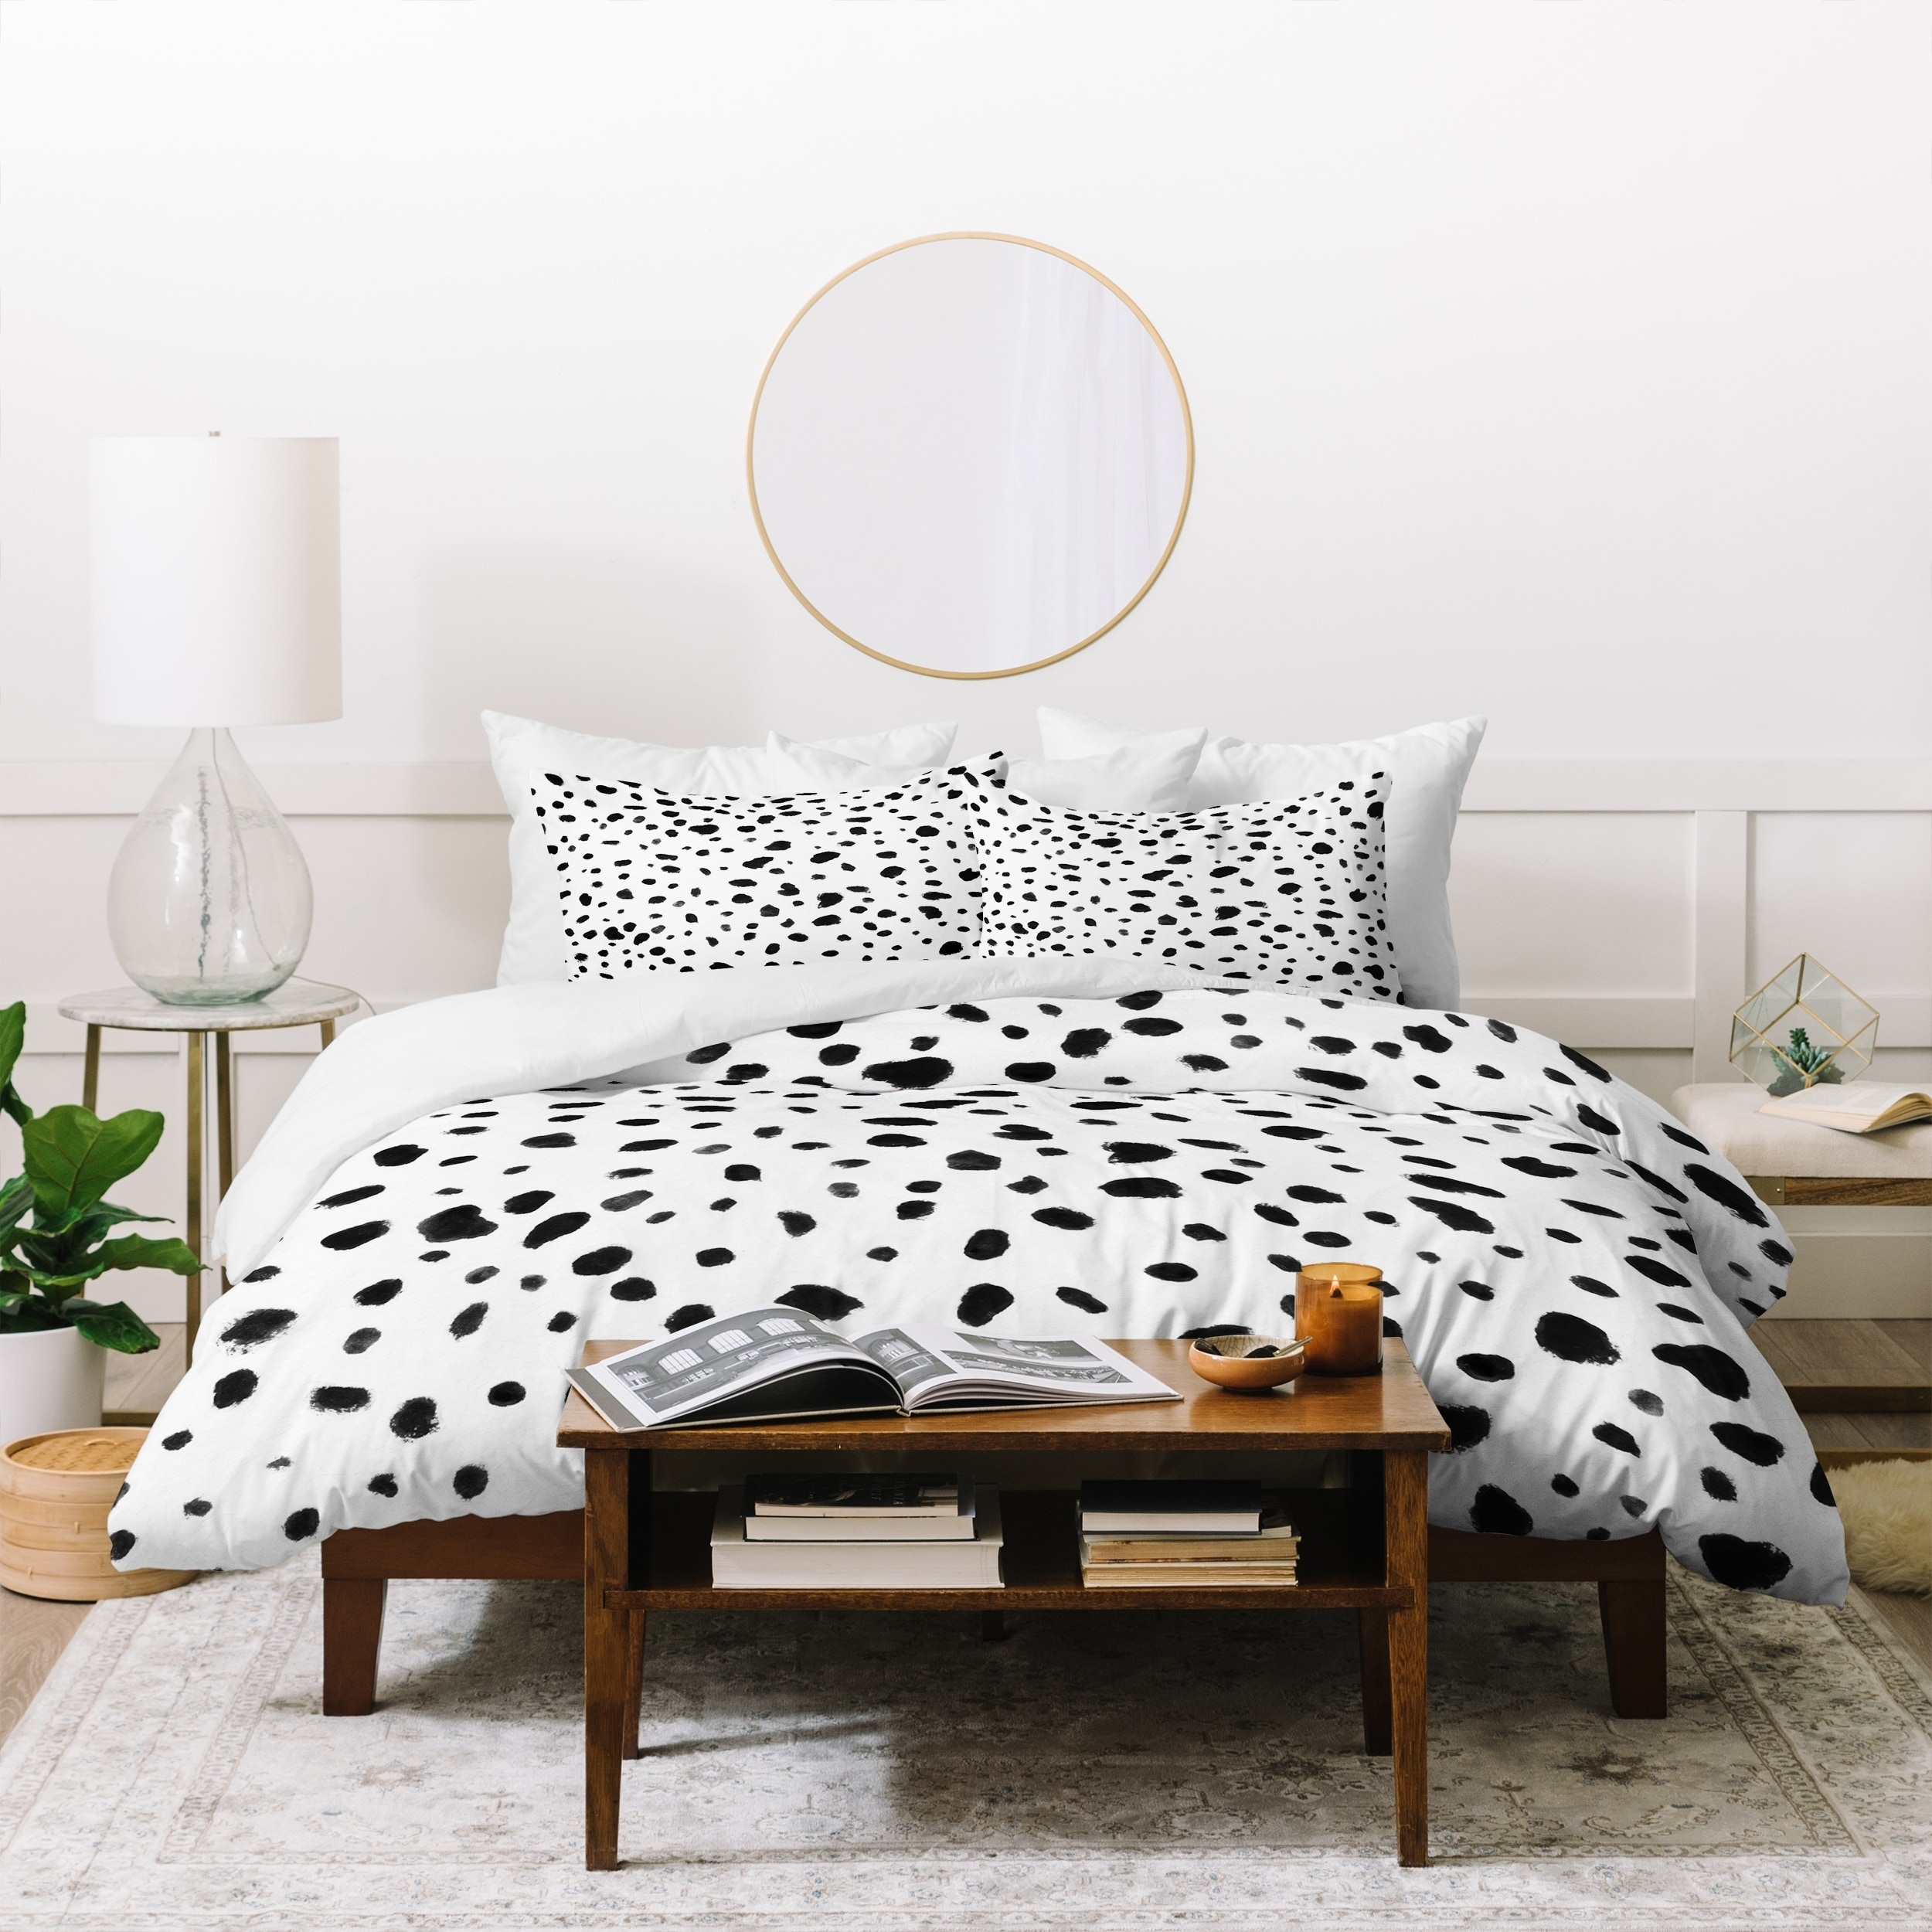 Shop Deny Design Dalmatian Duvet Cover Set 3 Piece Set On Sale